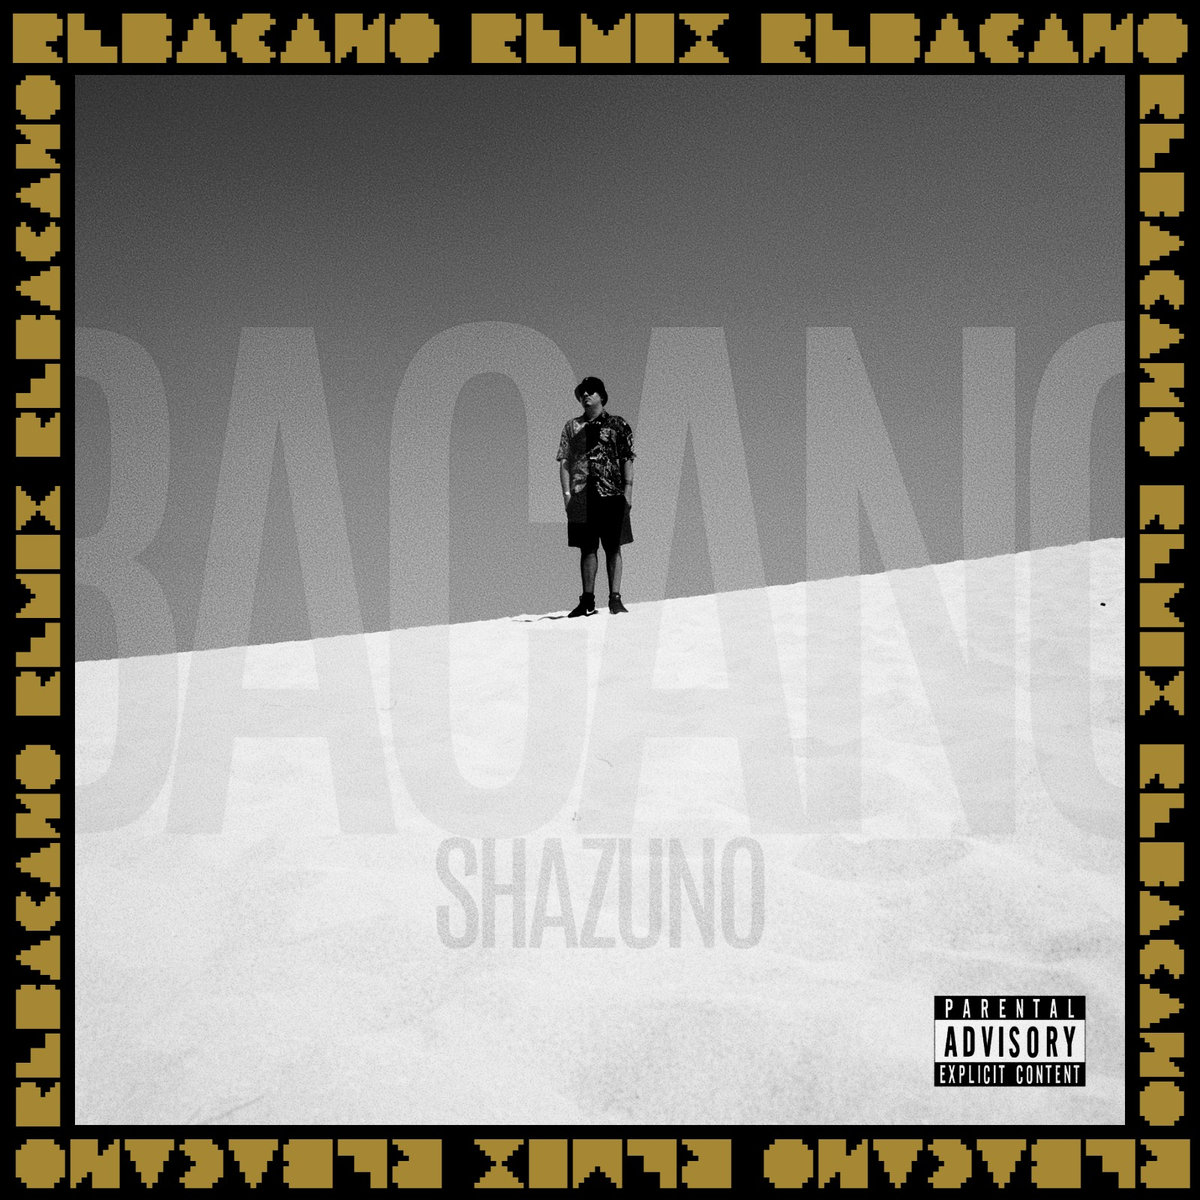 Shazuno_re-bacano